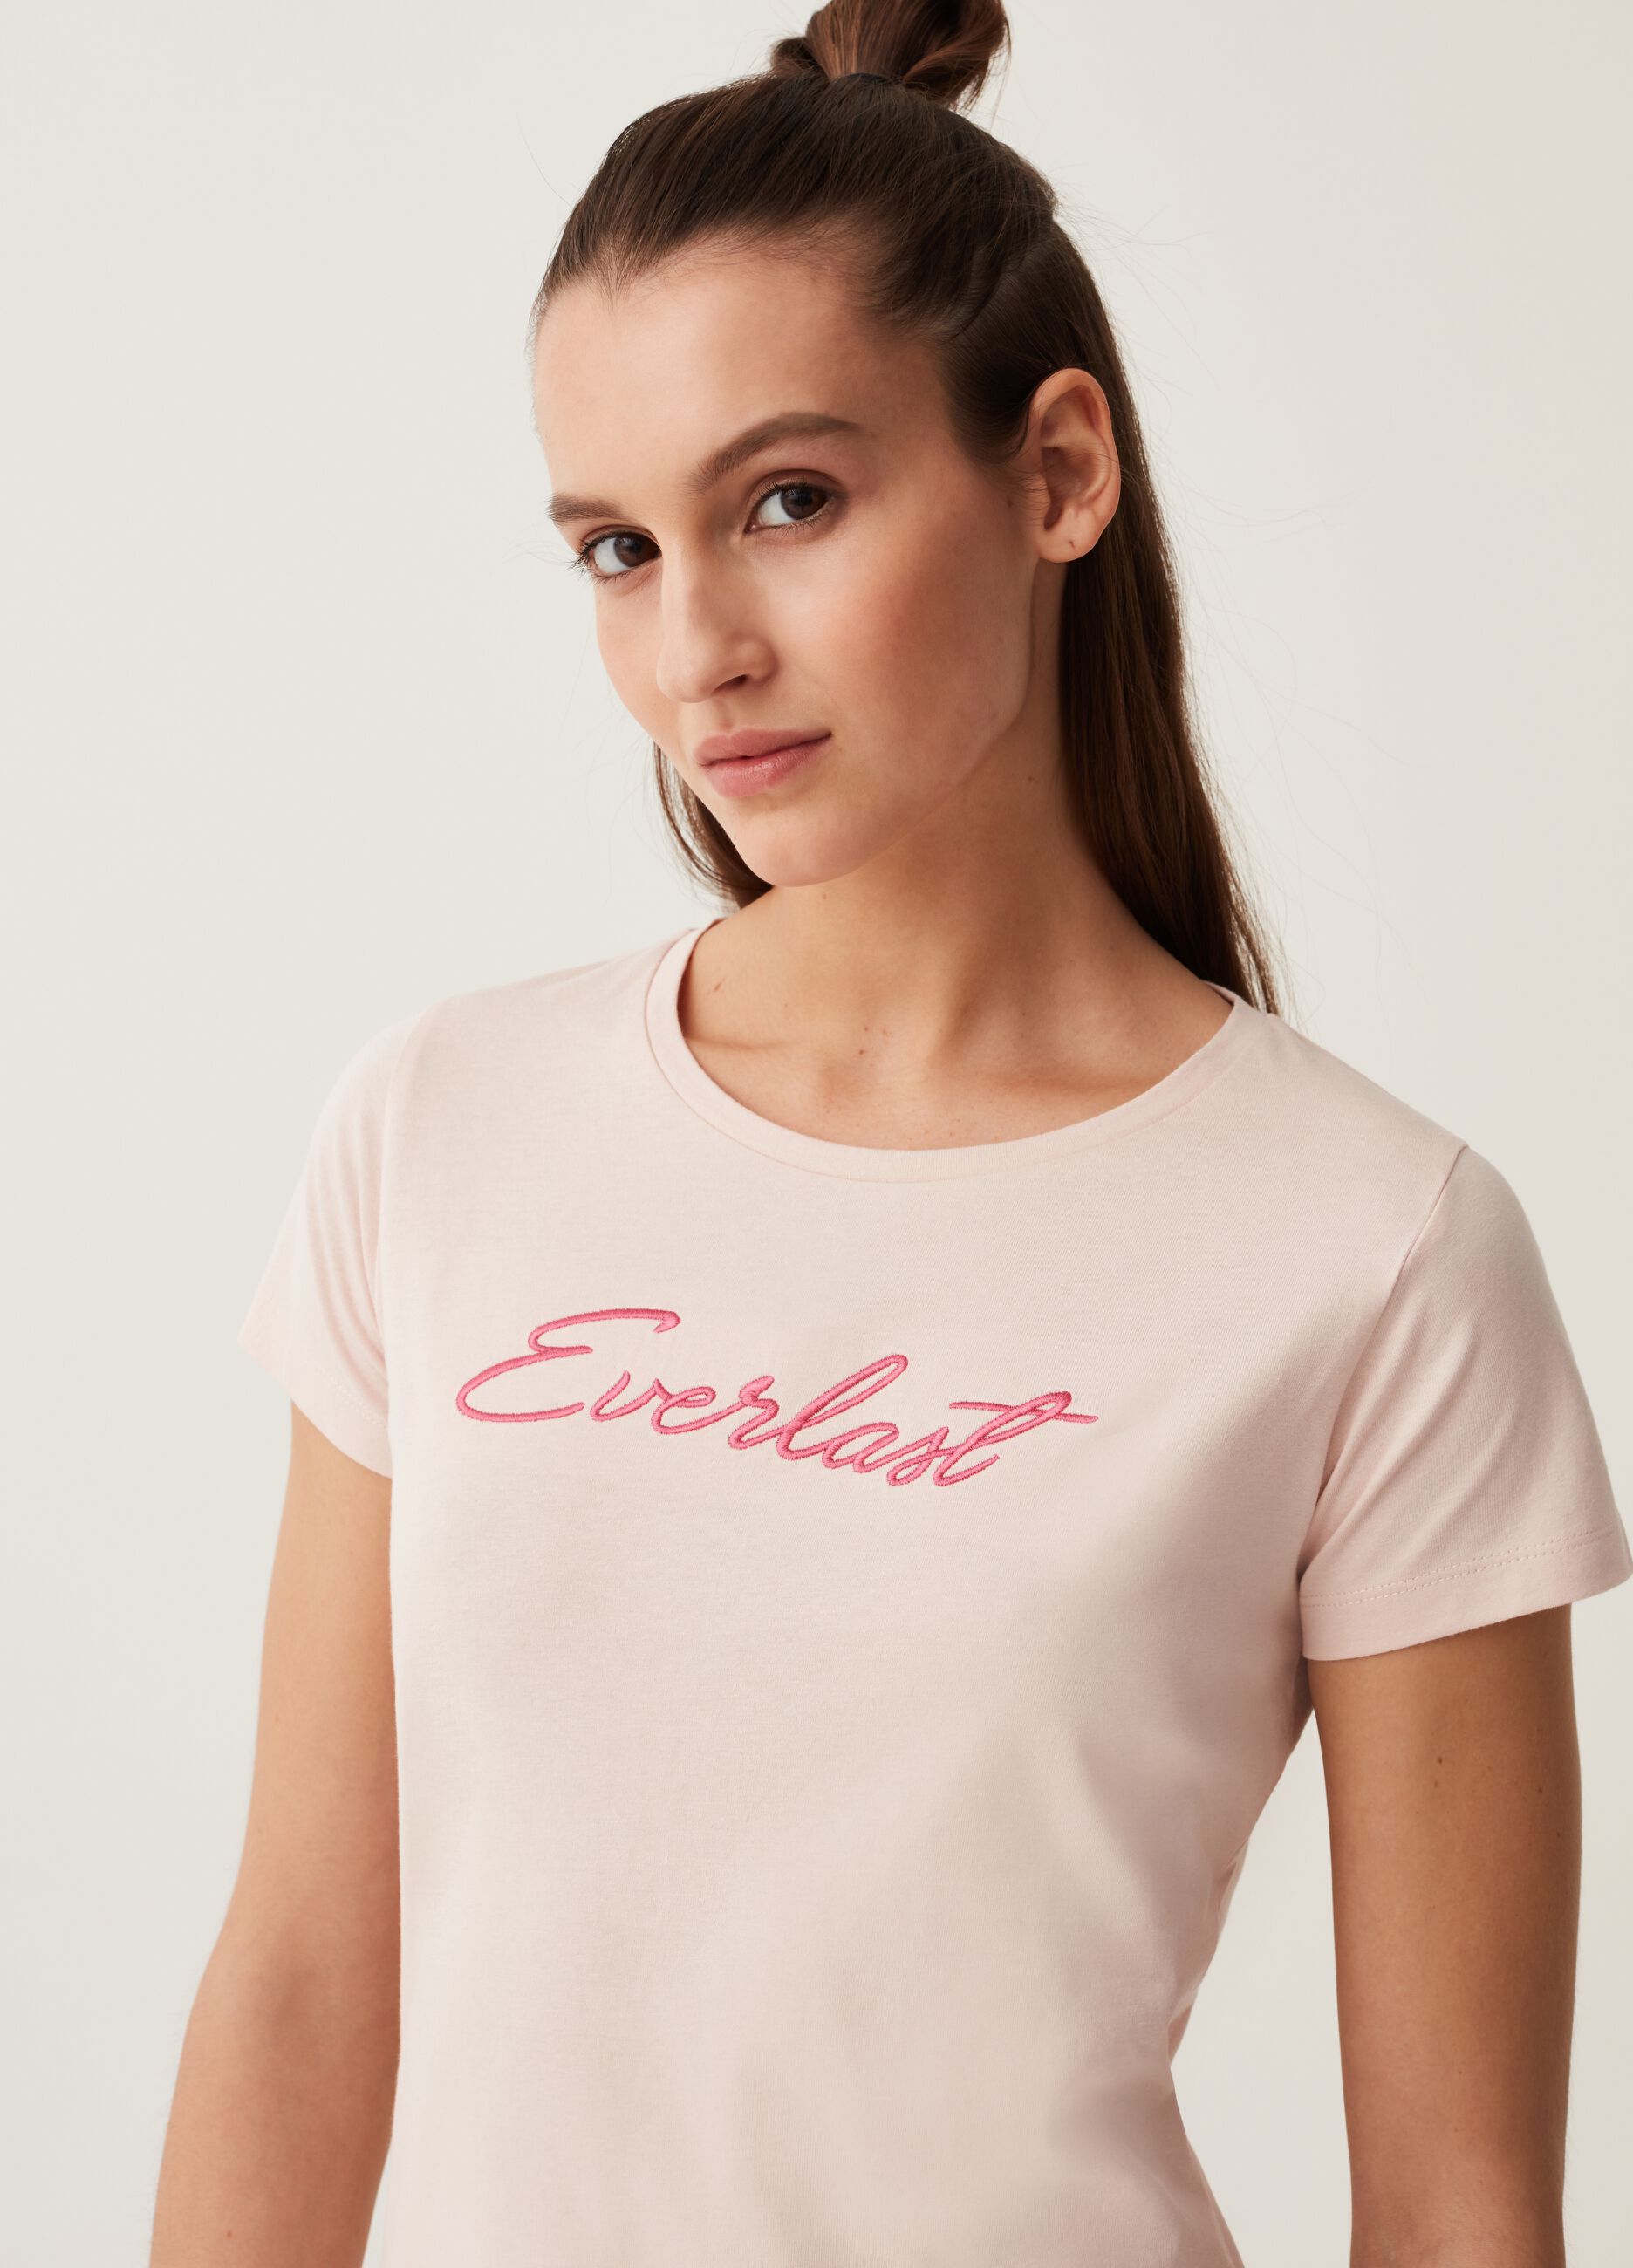 Camiseta con bordado y estampado Everlast